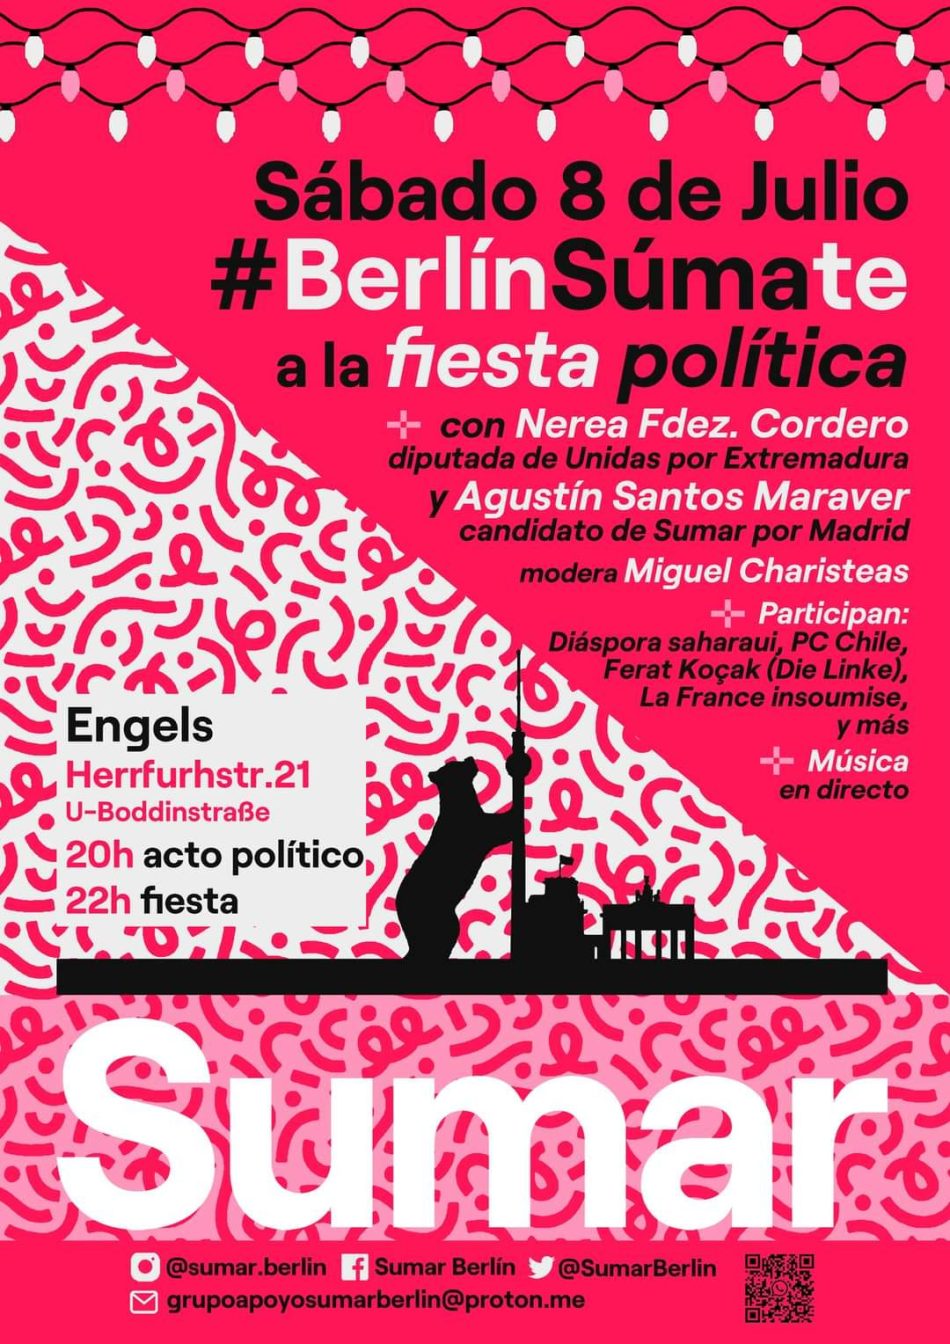 Santos Maraver hará campaña por Sumar en Berlín con la diáspora española